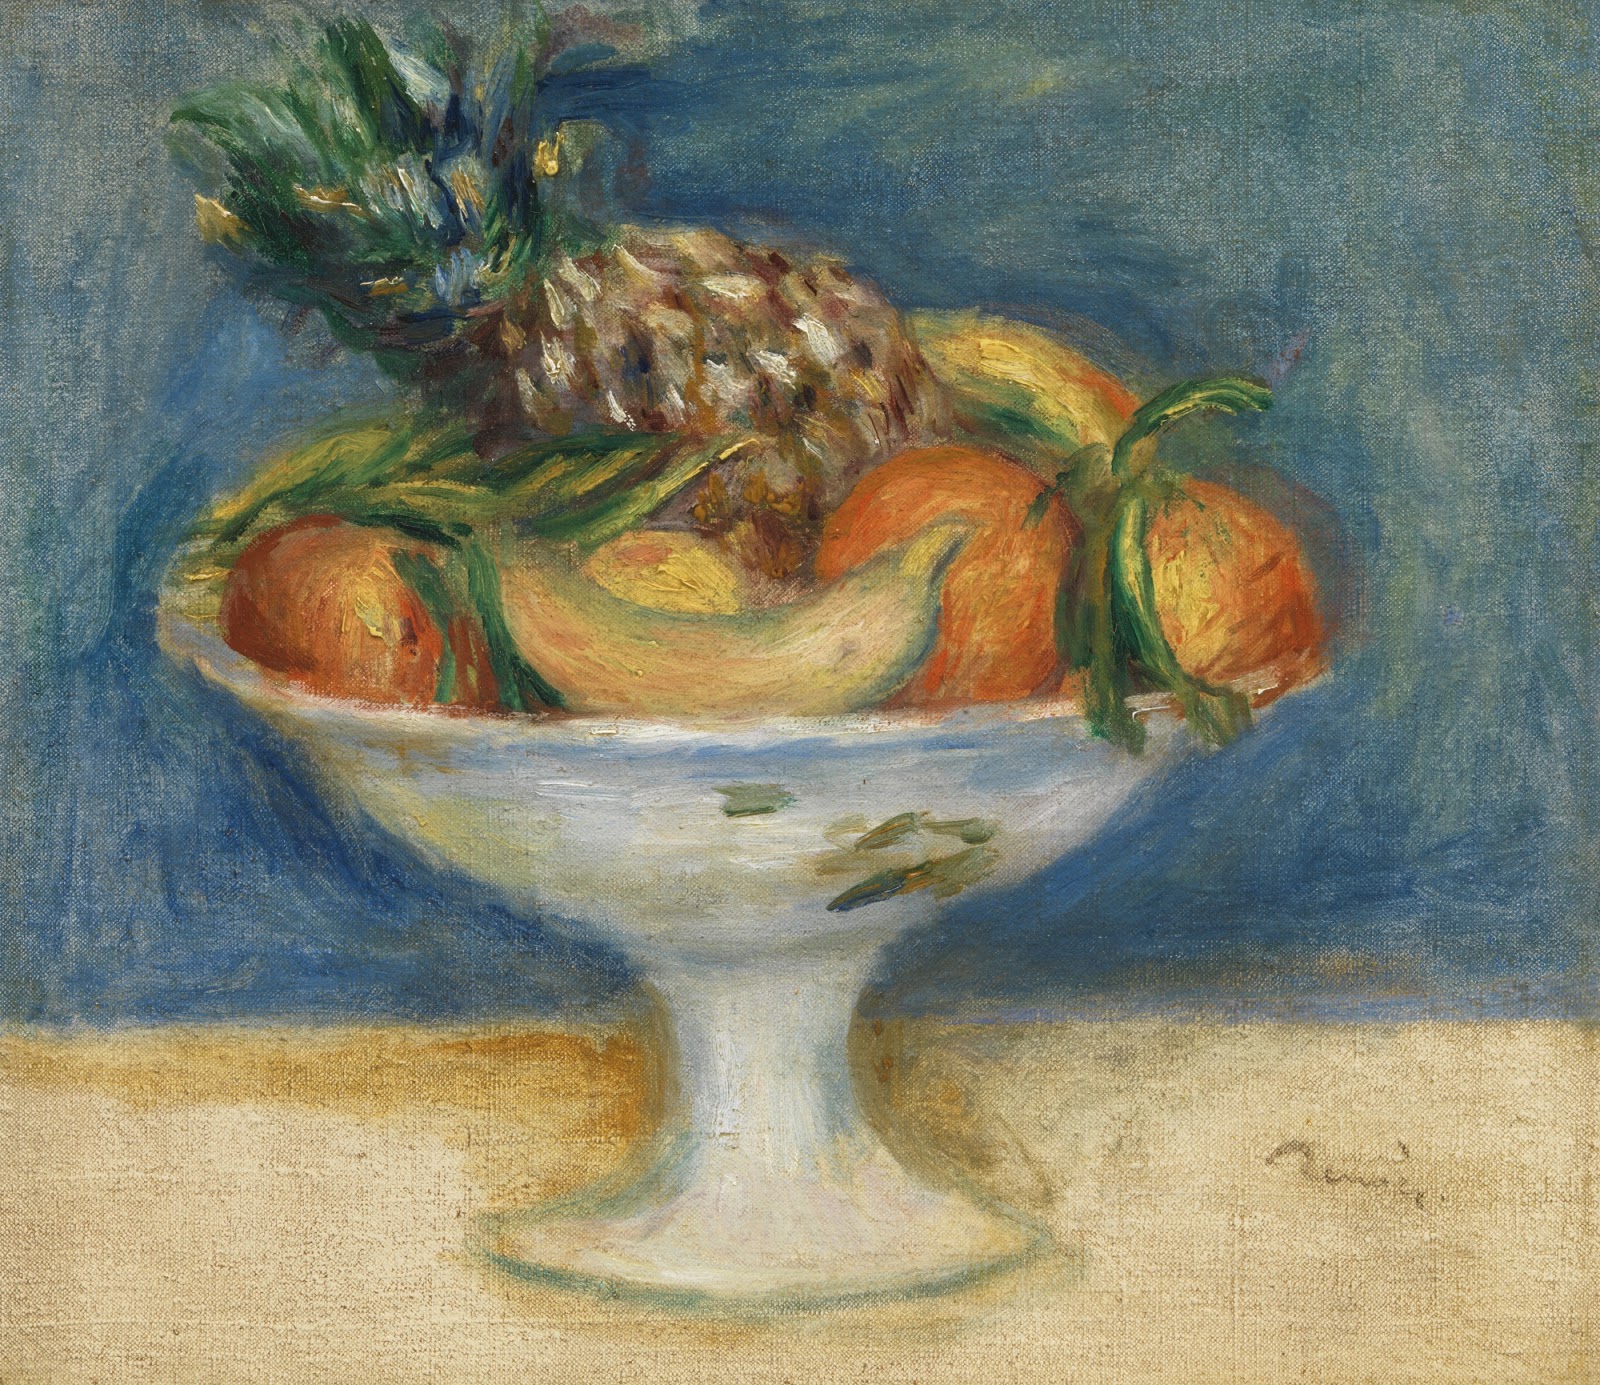 Pierre+Auguste+Renoir-1841-1-19 (588).jpg